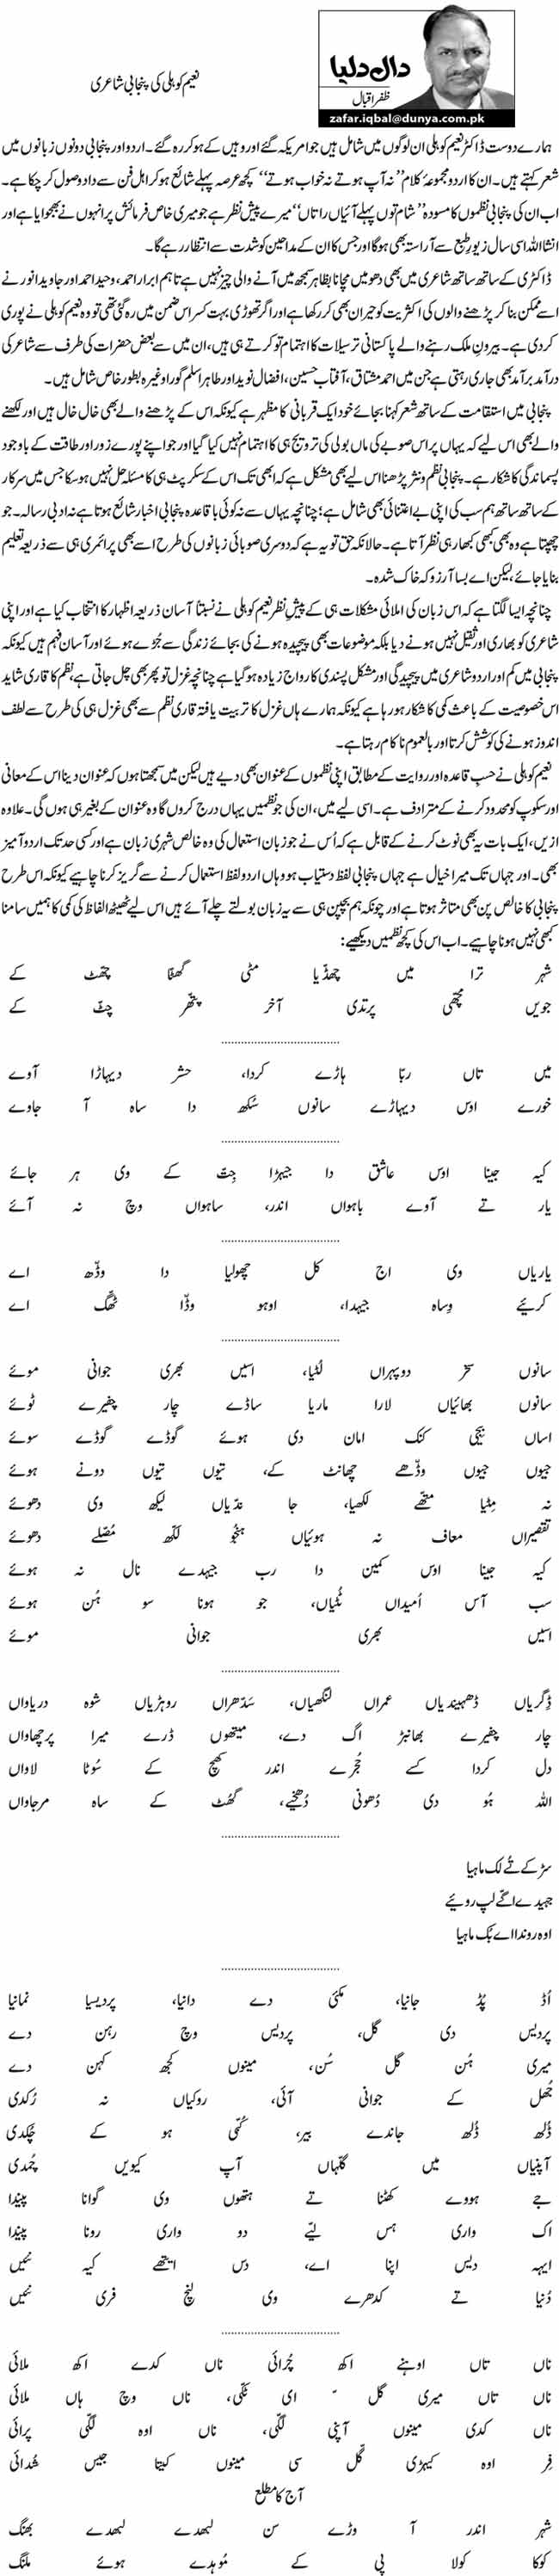 نعیم کوہلی کی پنجابی شاعری 